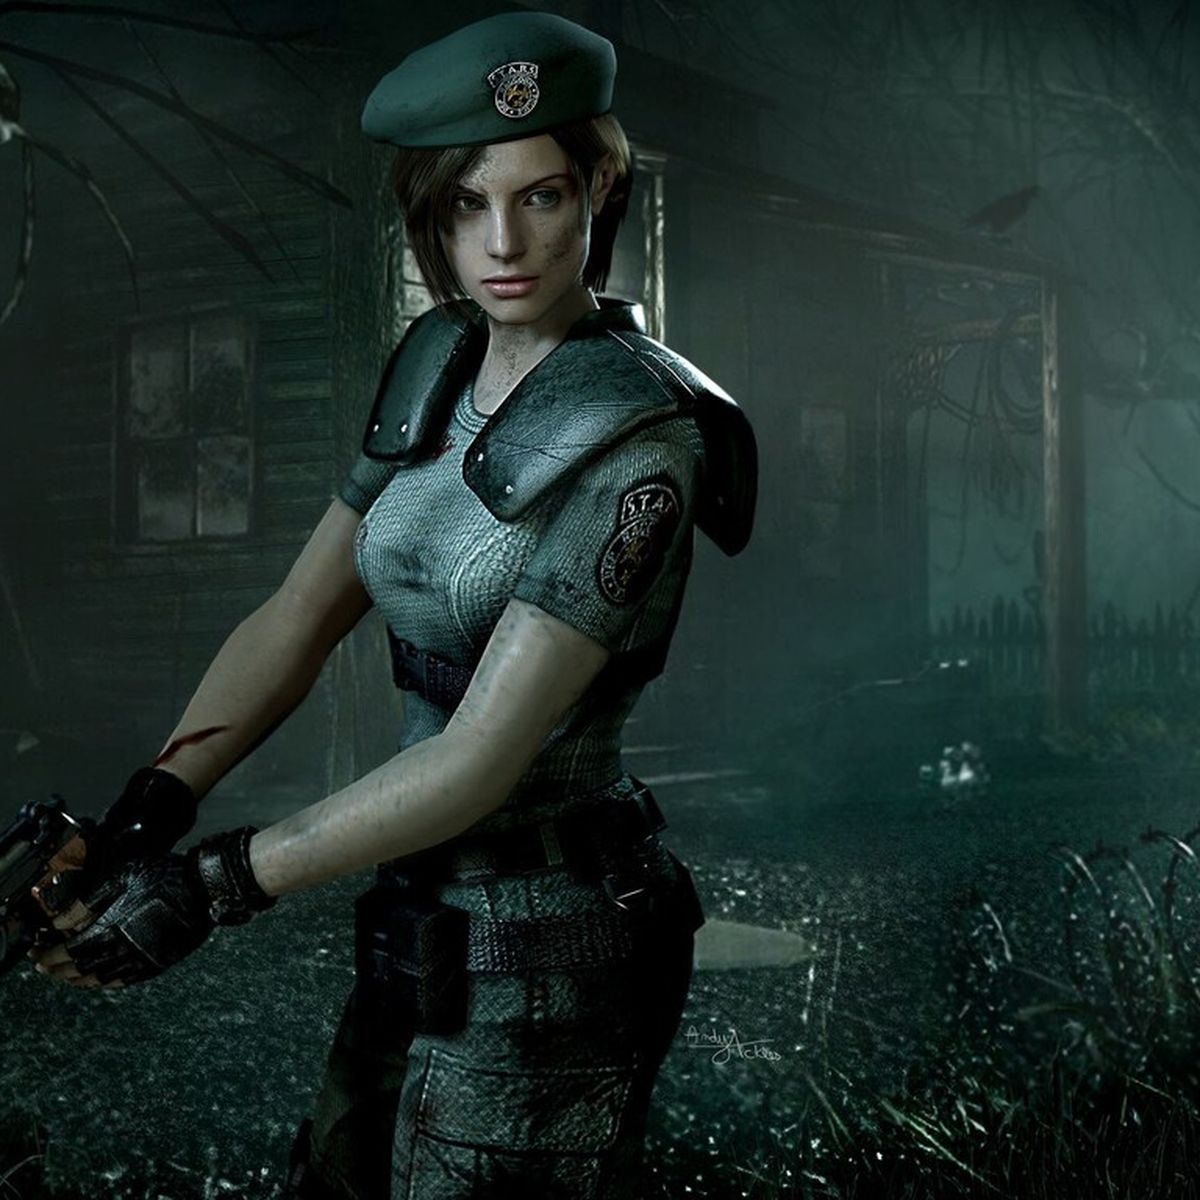 Fans De Resident Evil - Biohazard - Hace 4 días publiqué capturas